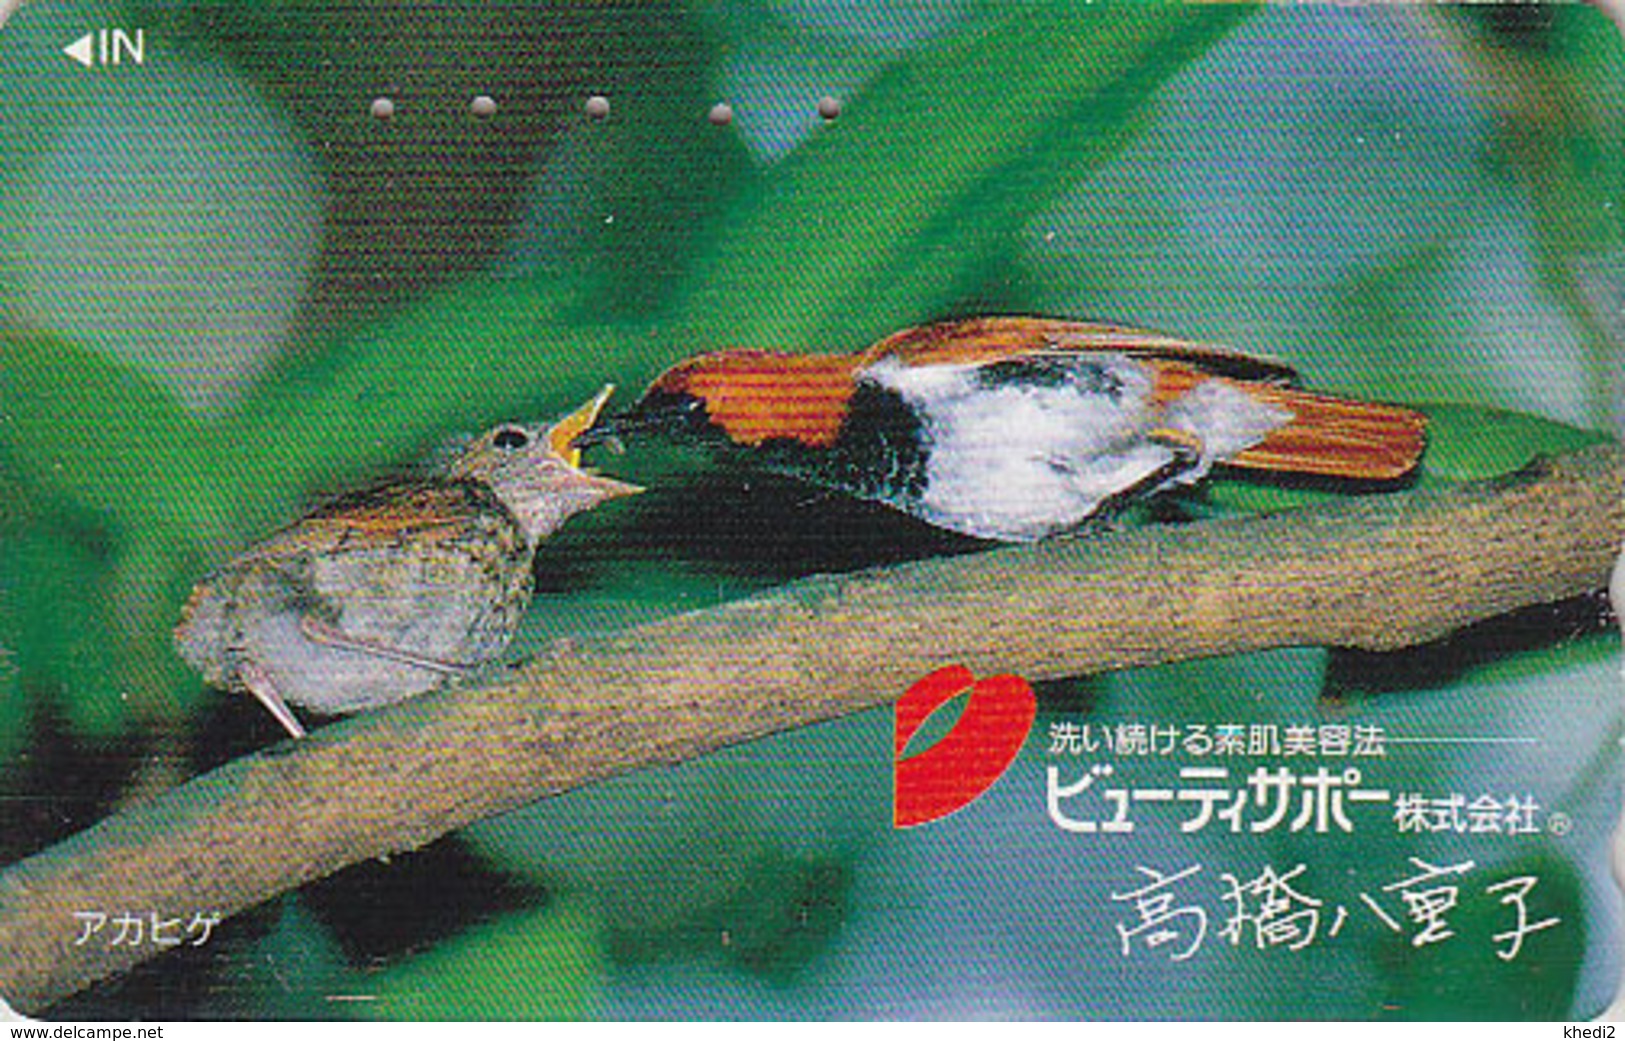 Télécarte Japon / 110-011 - Animal - OISEAU Au Nid - SONG BIRD Feeding Japan Phonecard - BE 4481 - Passereaux